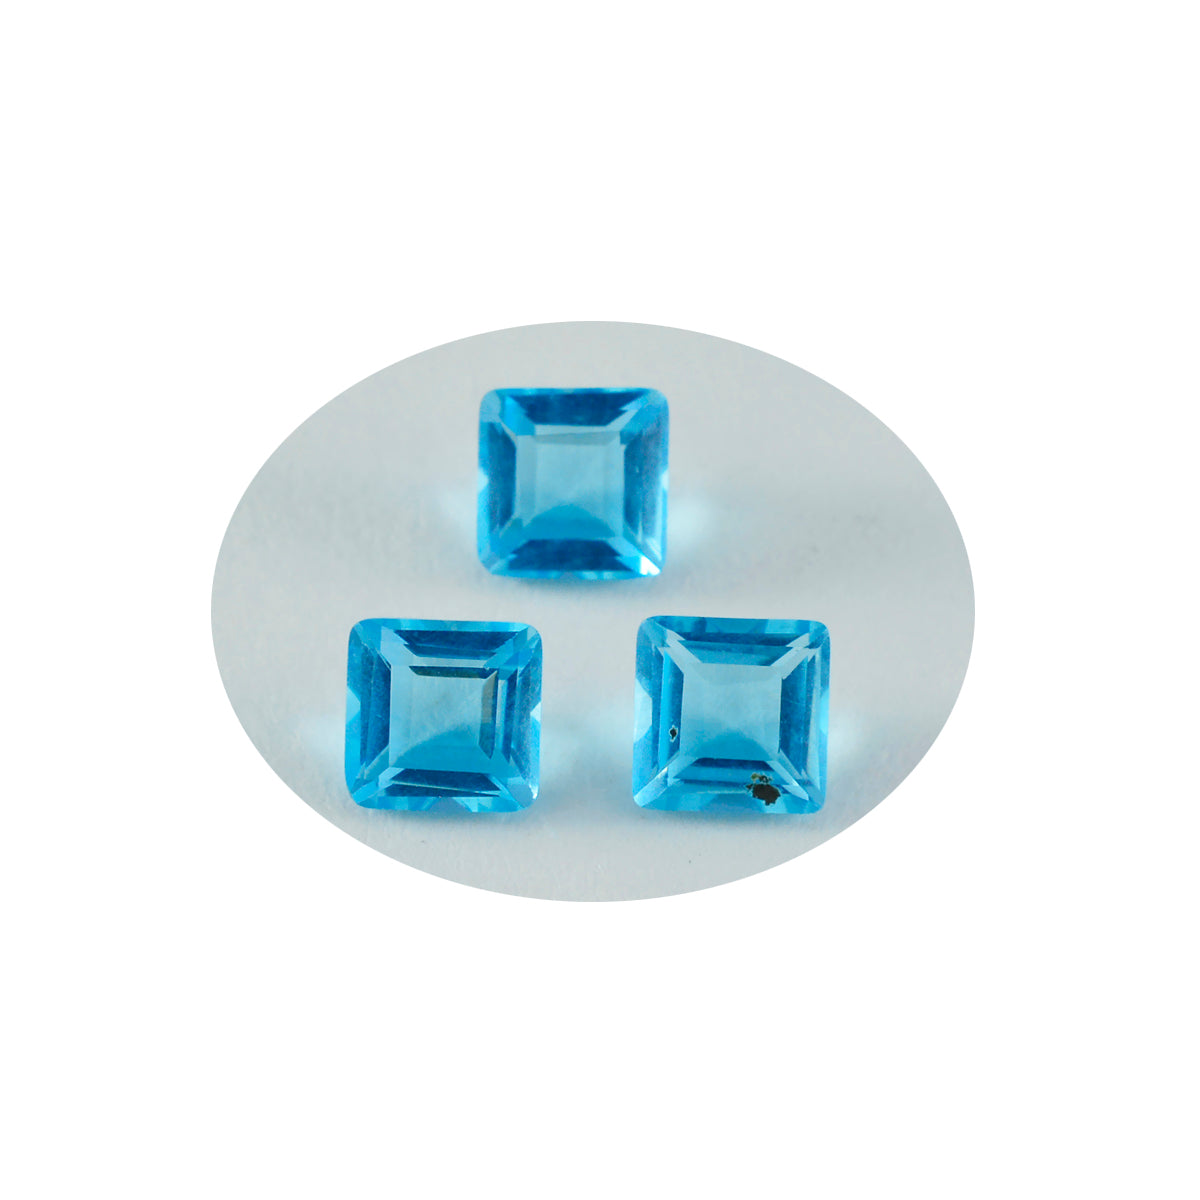 Riyogems 1pc topaze bleue cz facettes 8x8mm forme carrée belle pierre précieuse de qualité